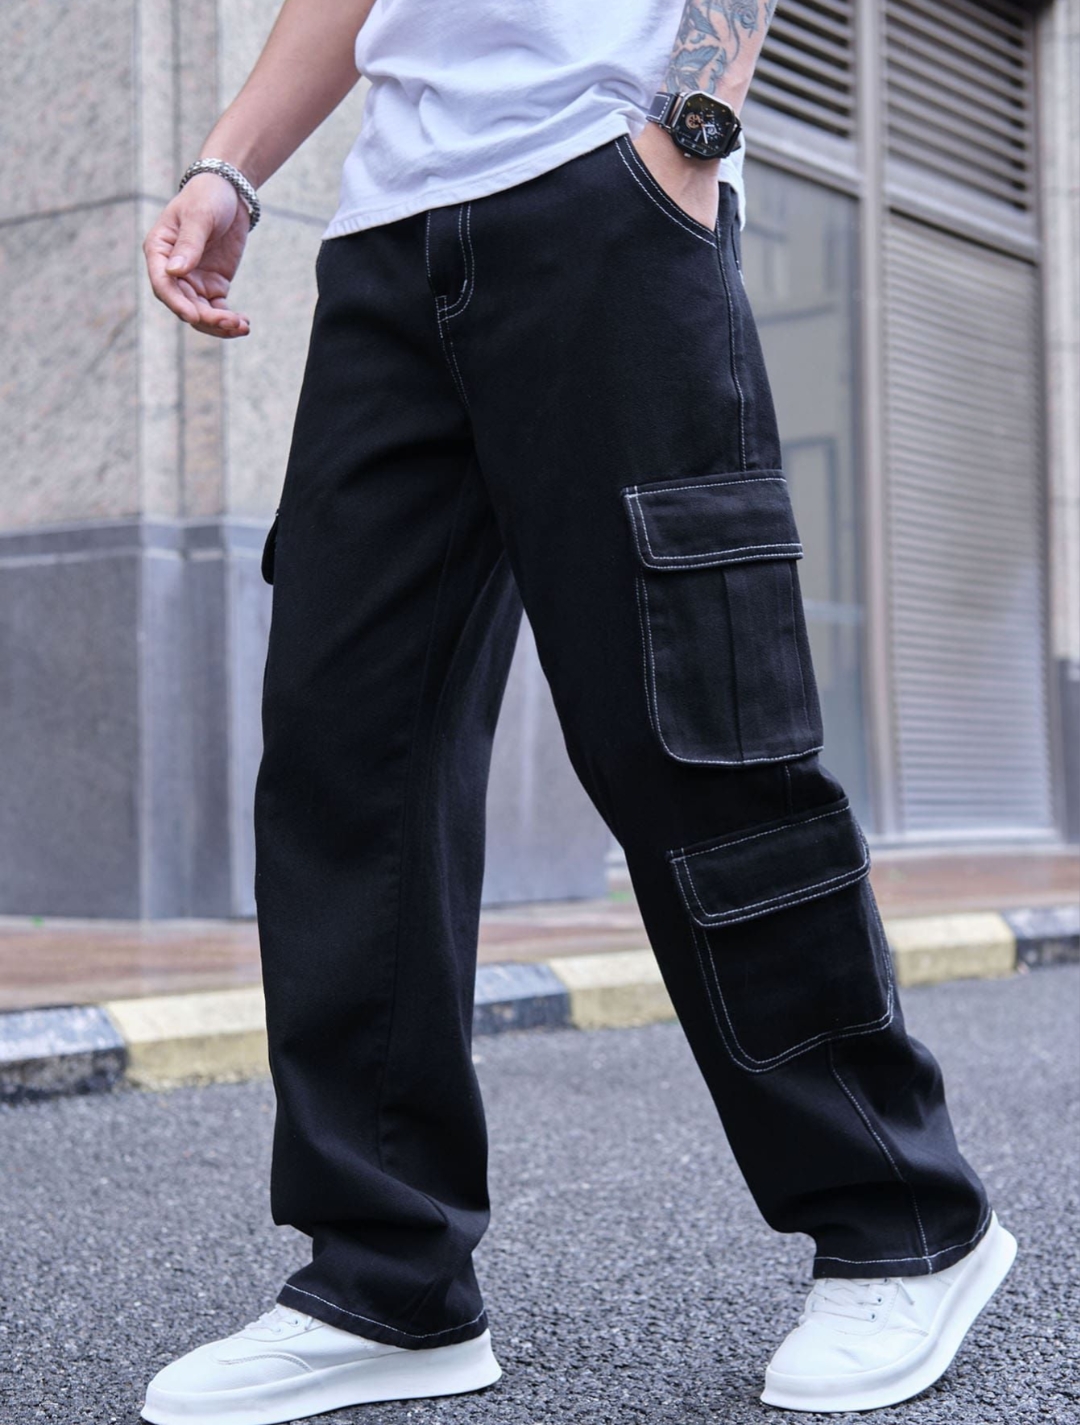 6 pocket pants for men (black)